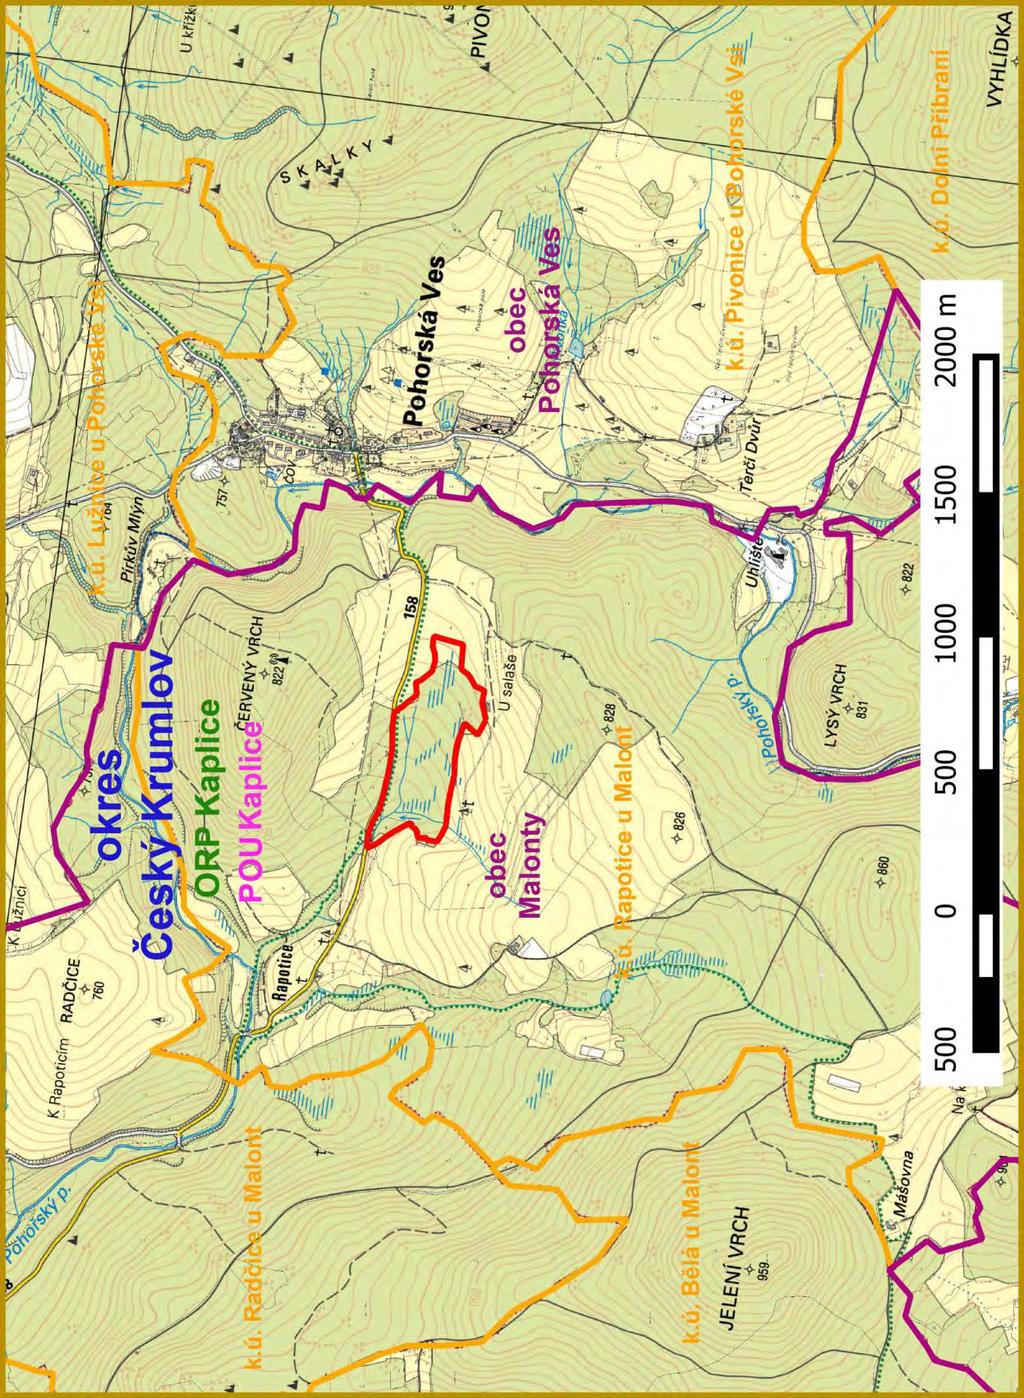 Příloha M1-f: Orientační mapa s vyznačením území Územně